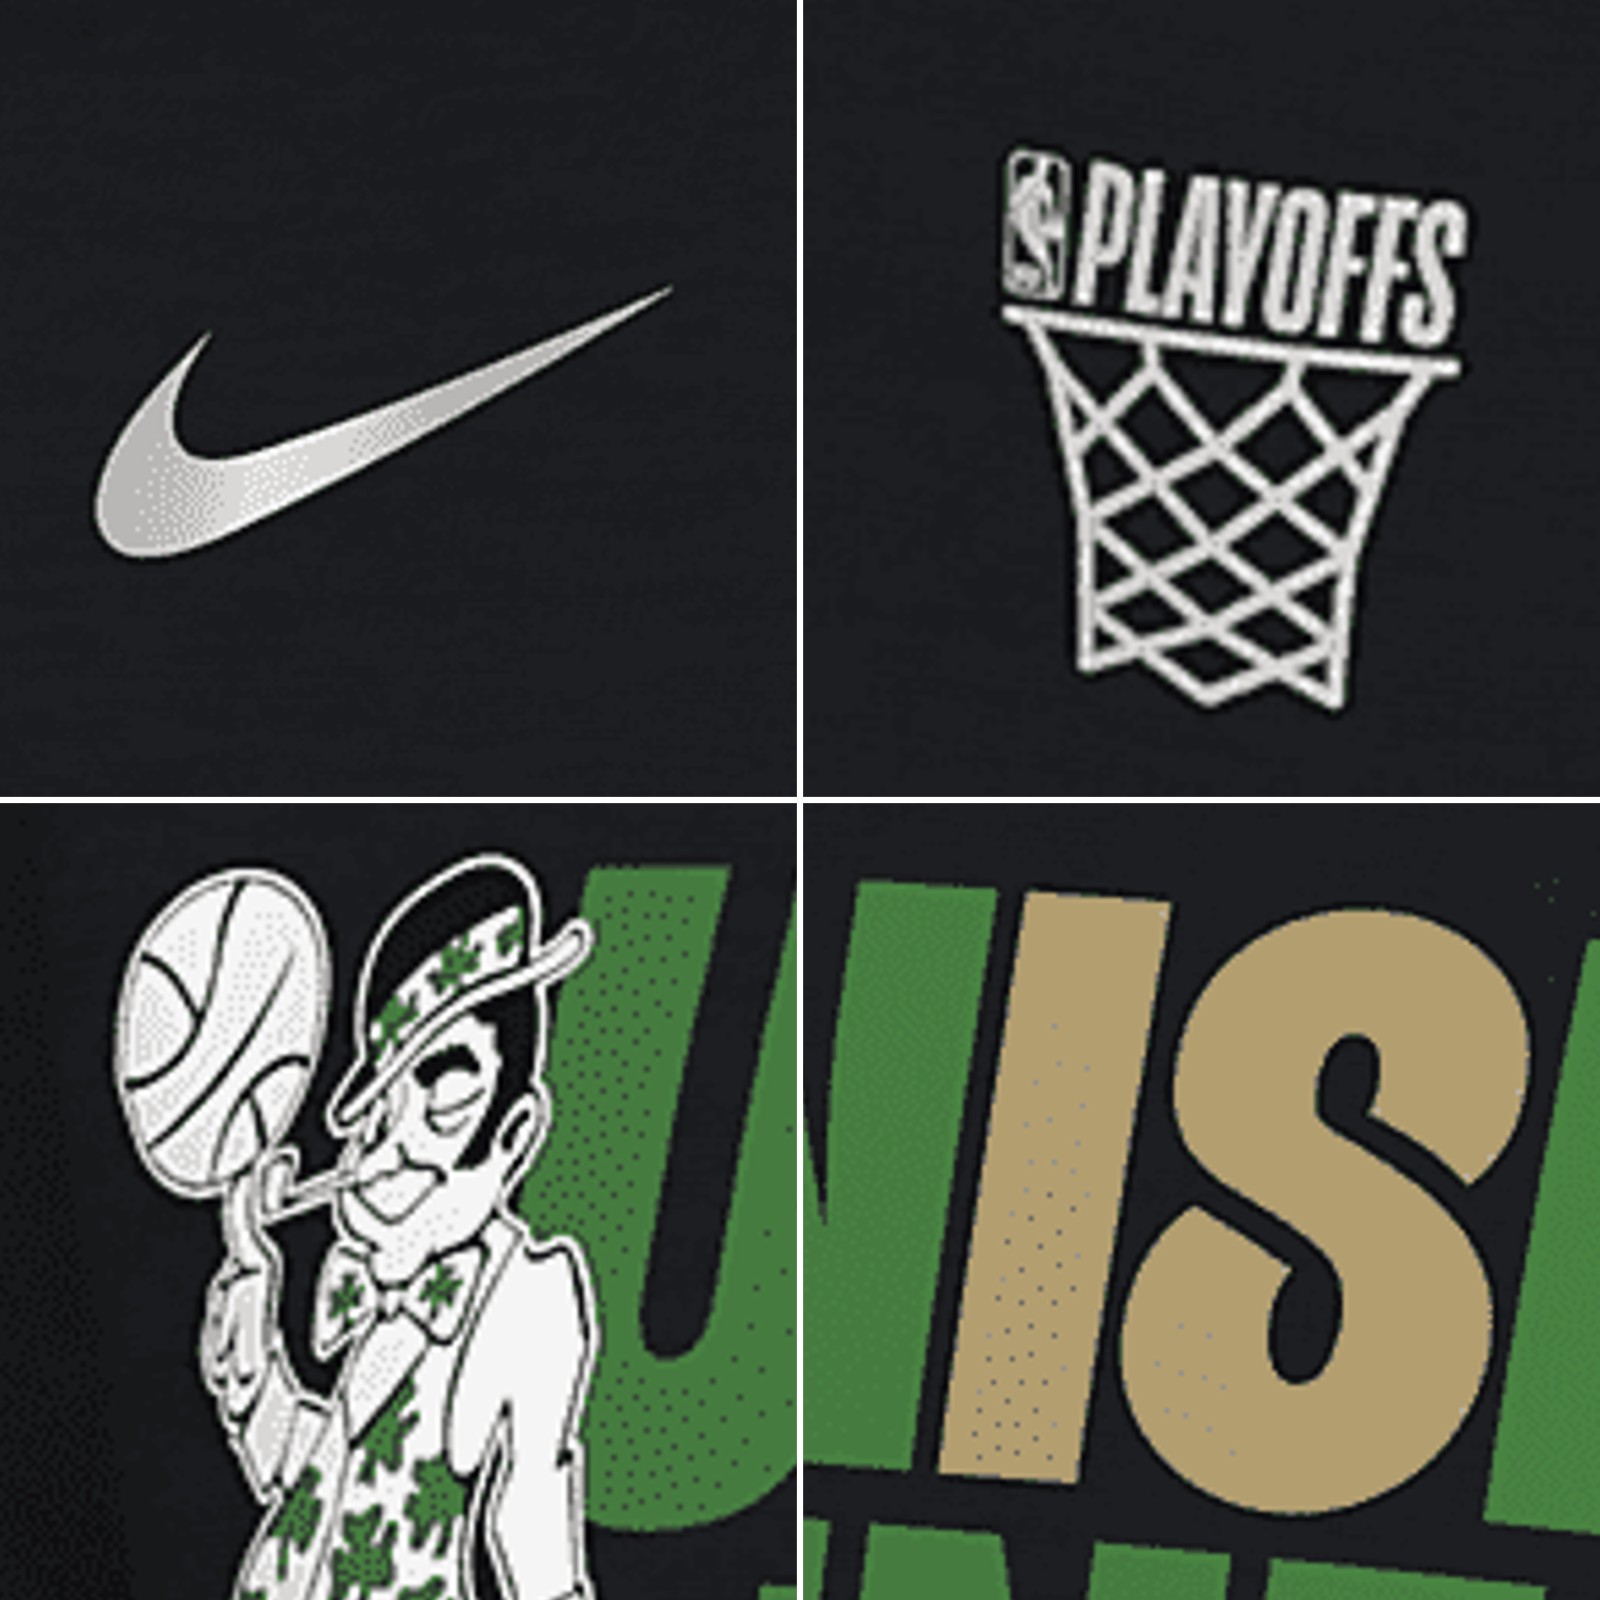 Boston Celtics Nike NBA Playoff Shirt, Big BOS Logo Tshirt - High